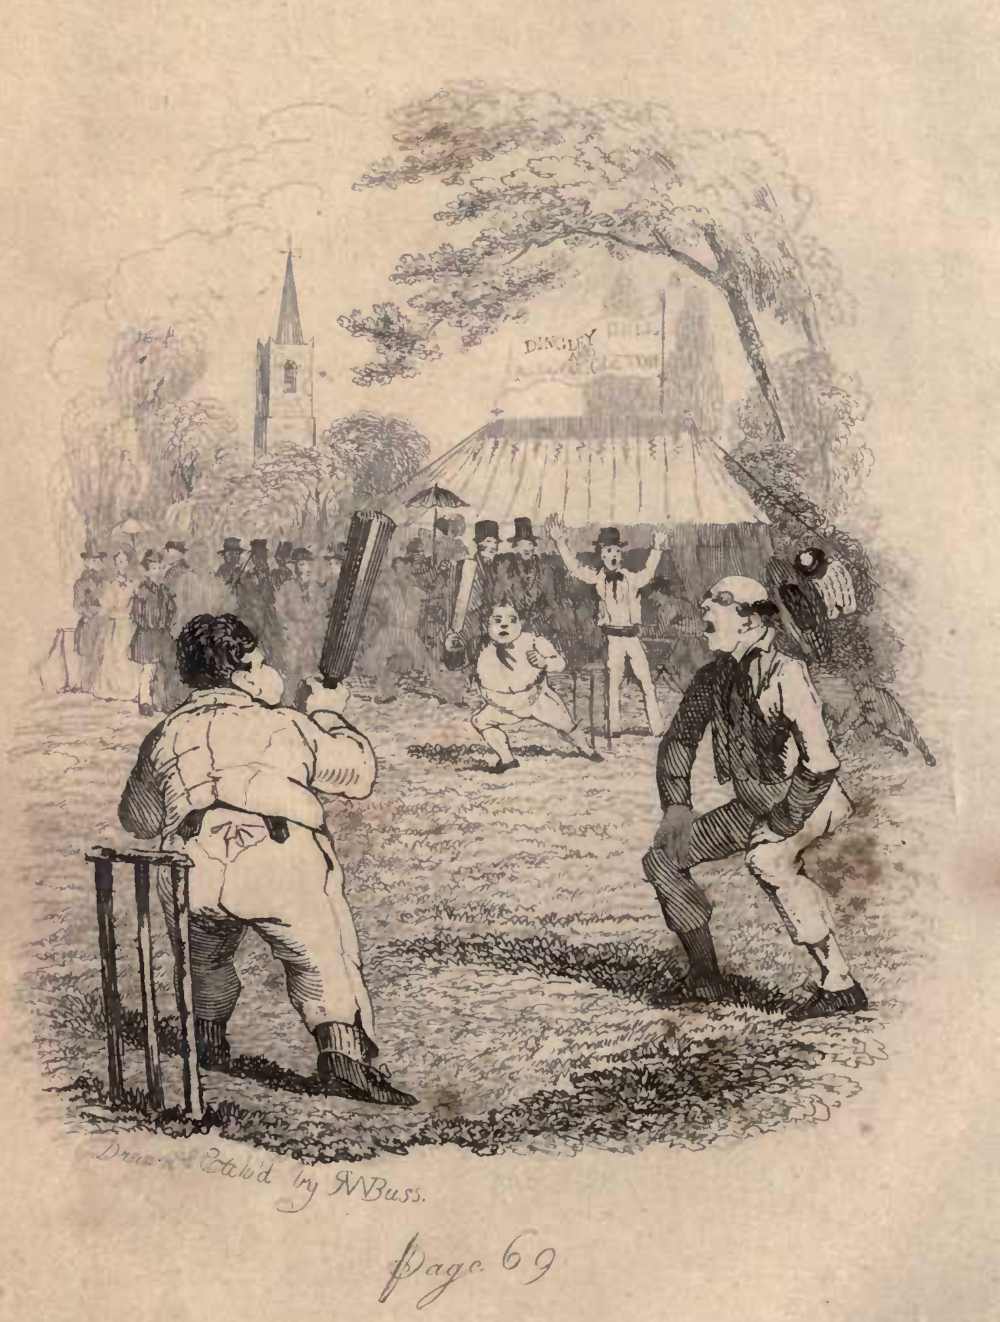 A cricket match